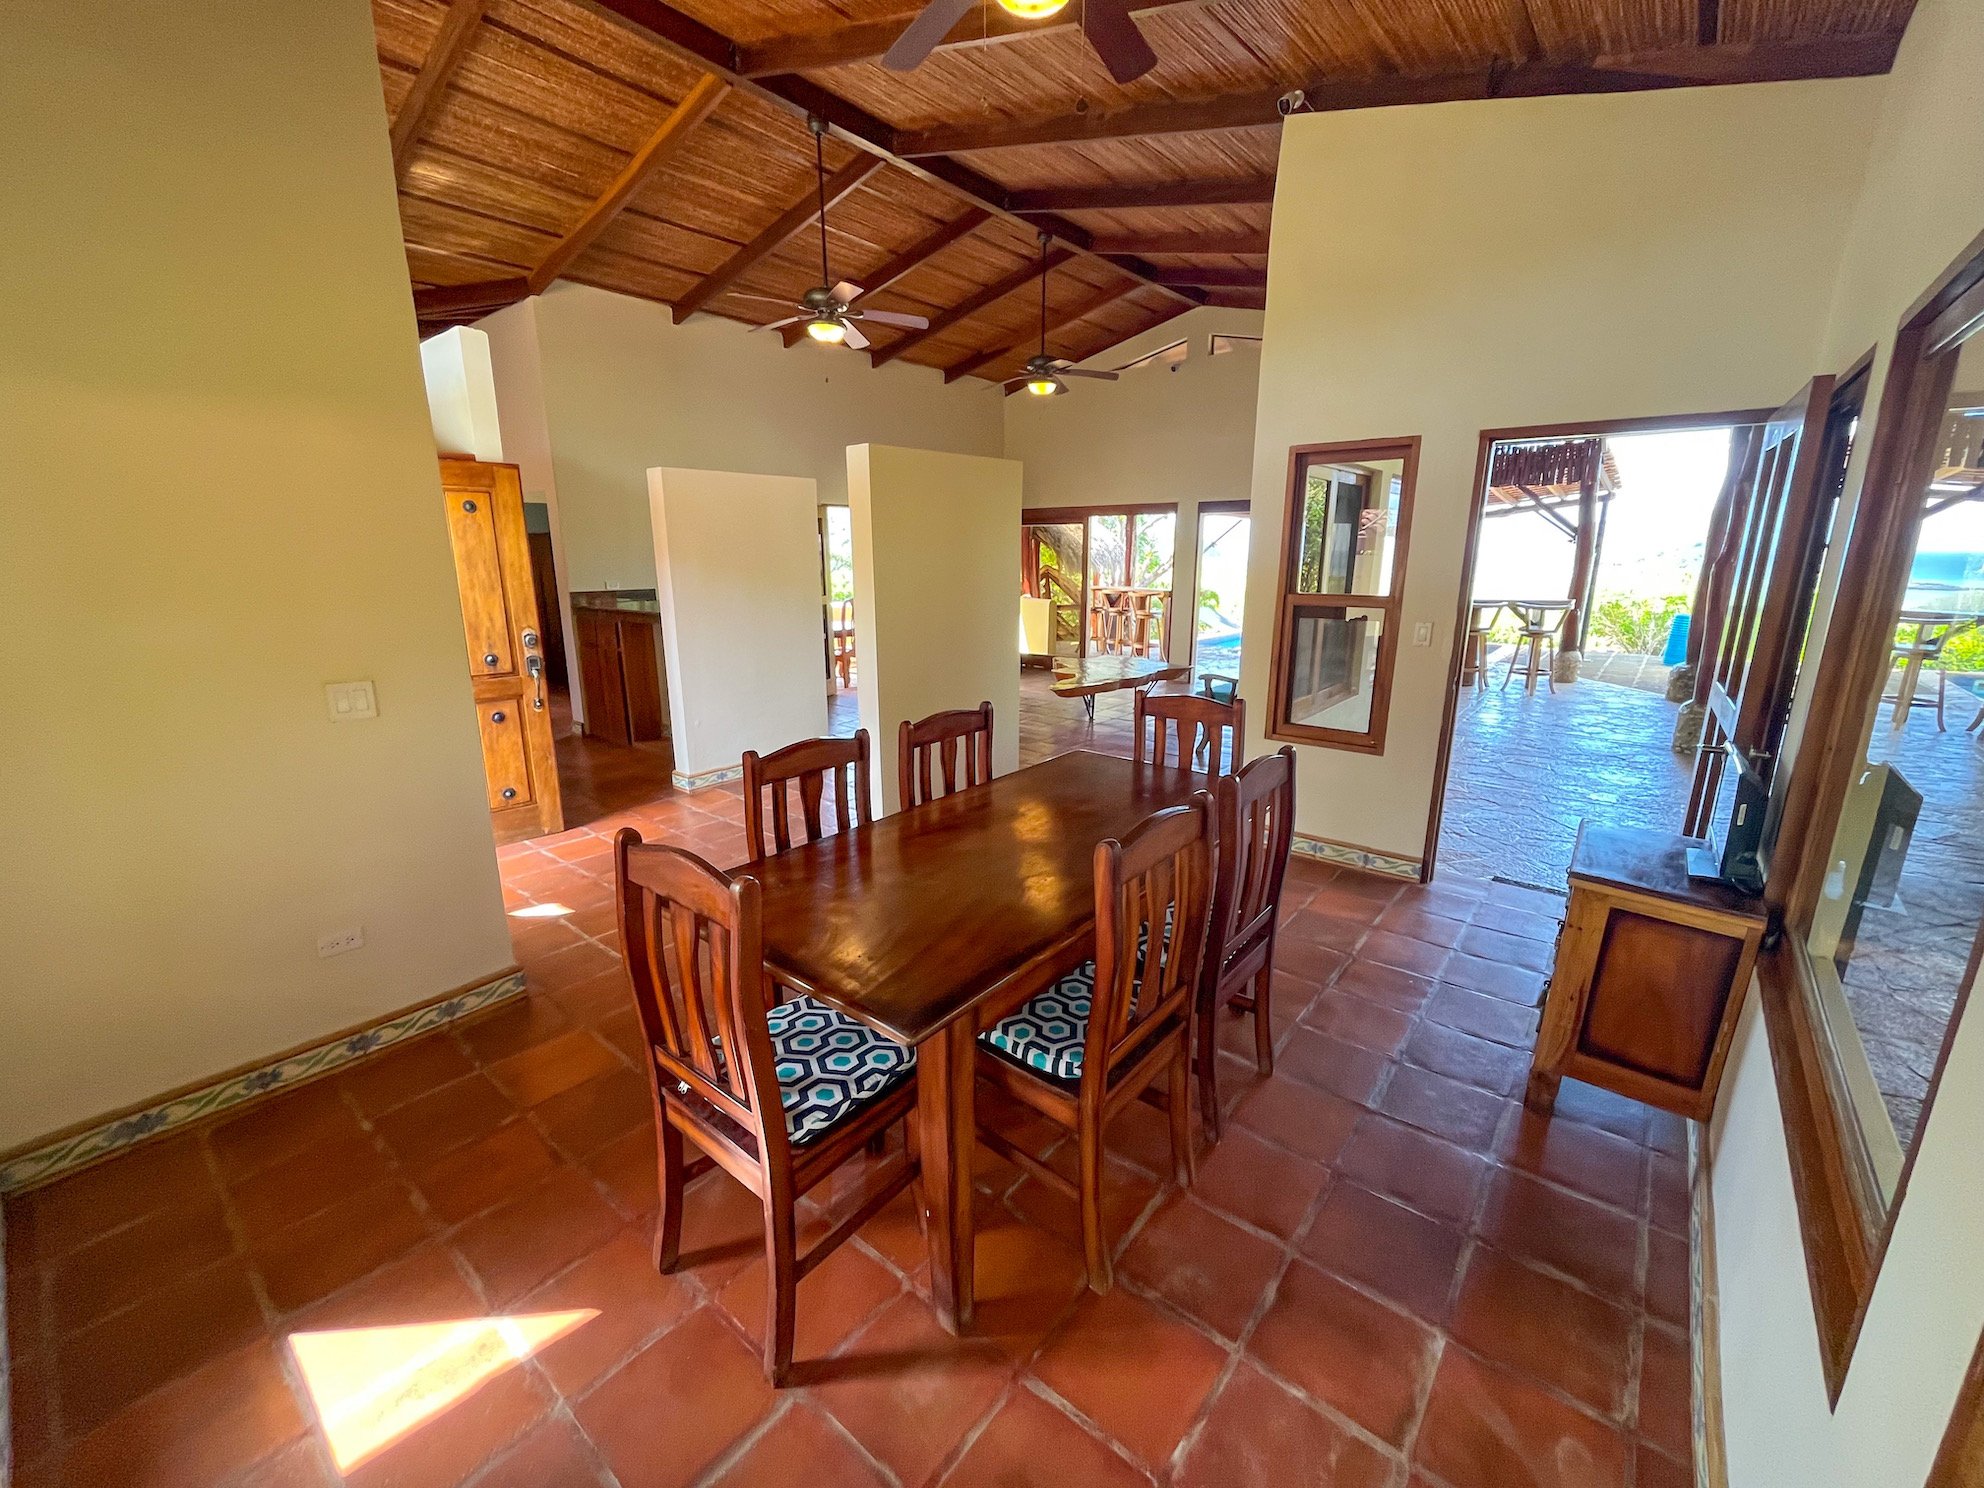 Large Home For Sale San Juan Del Sur Property Real Estate Nicaragua 2023 25.JPEG